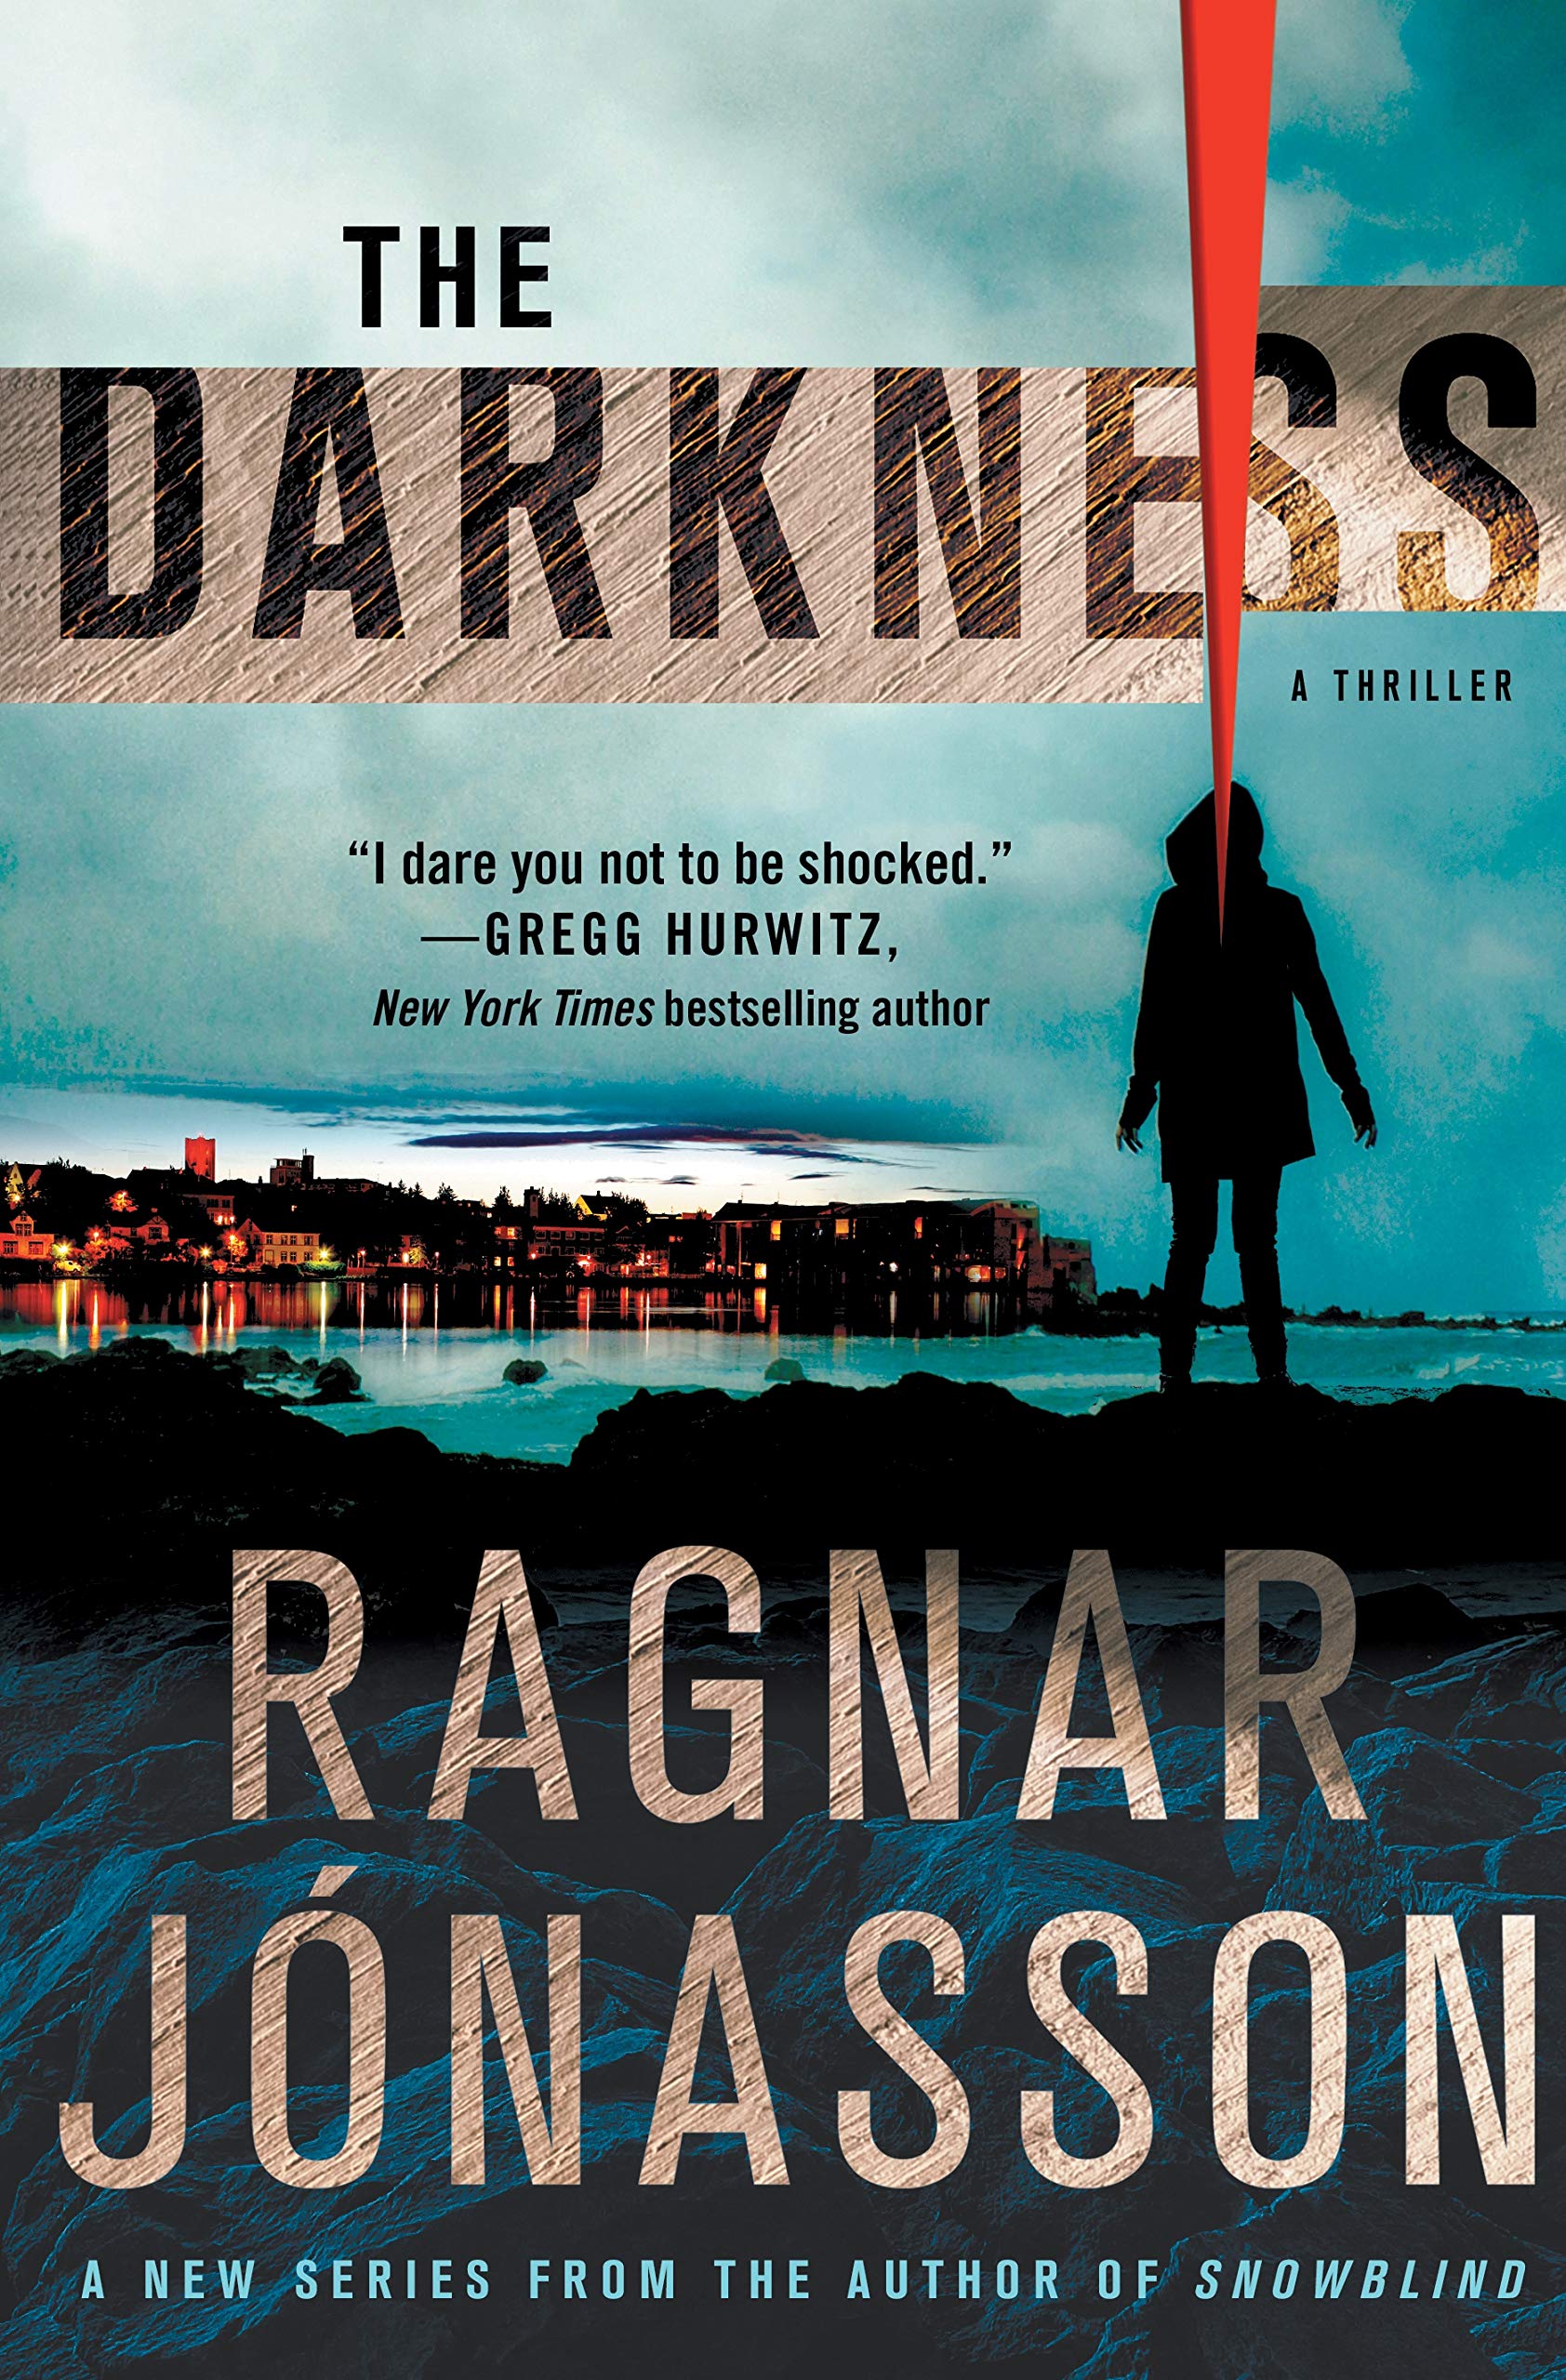 The darkness : a thriller